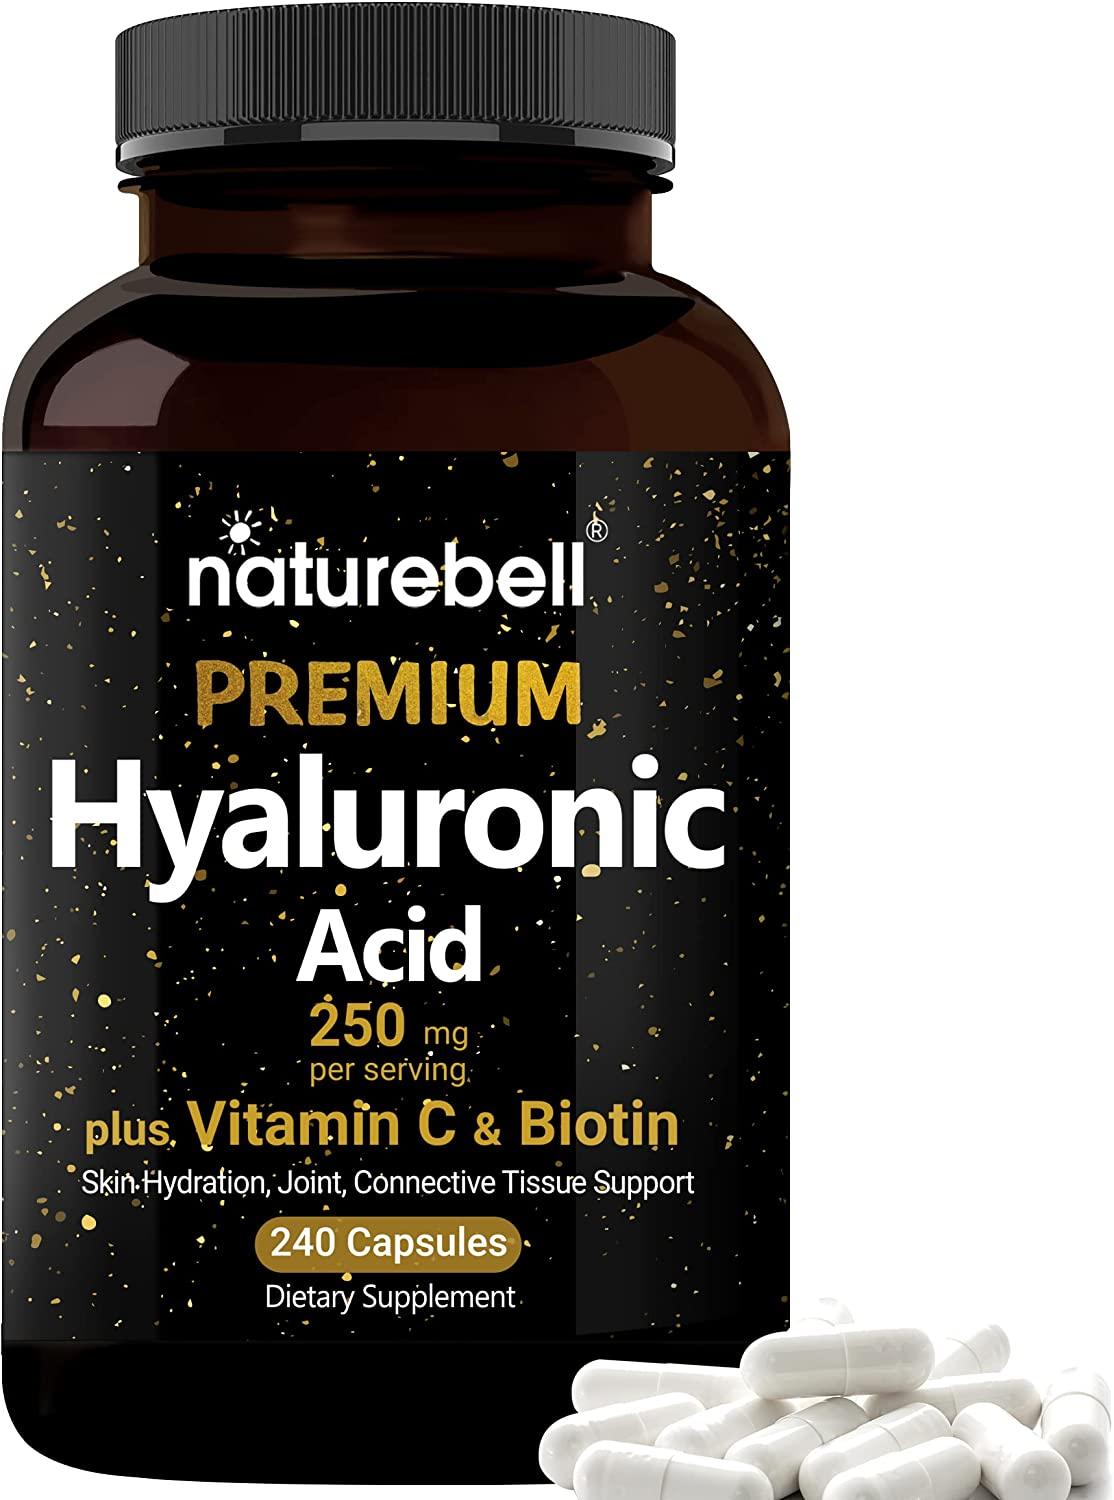 Acide Hyaluronique 250mg plus Vitamine C & Biotine - mondialpharma.com